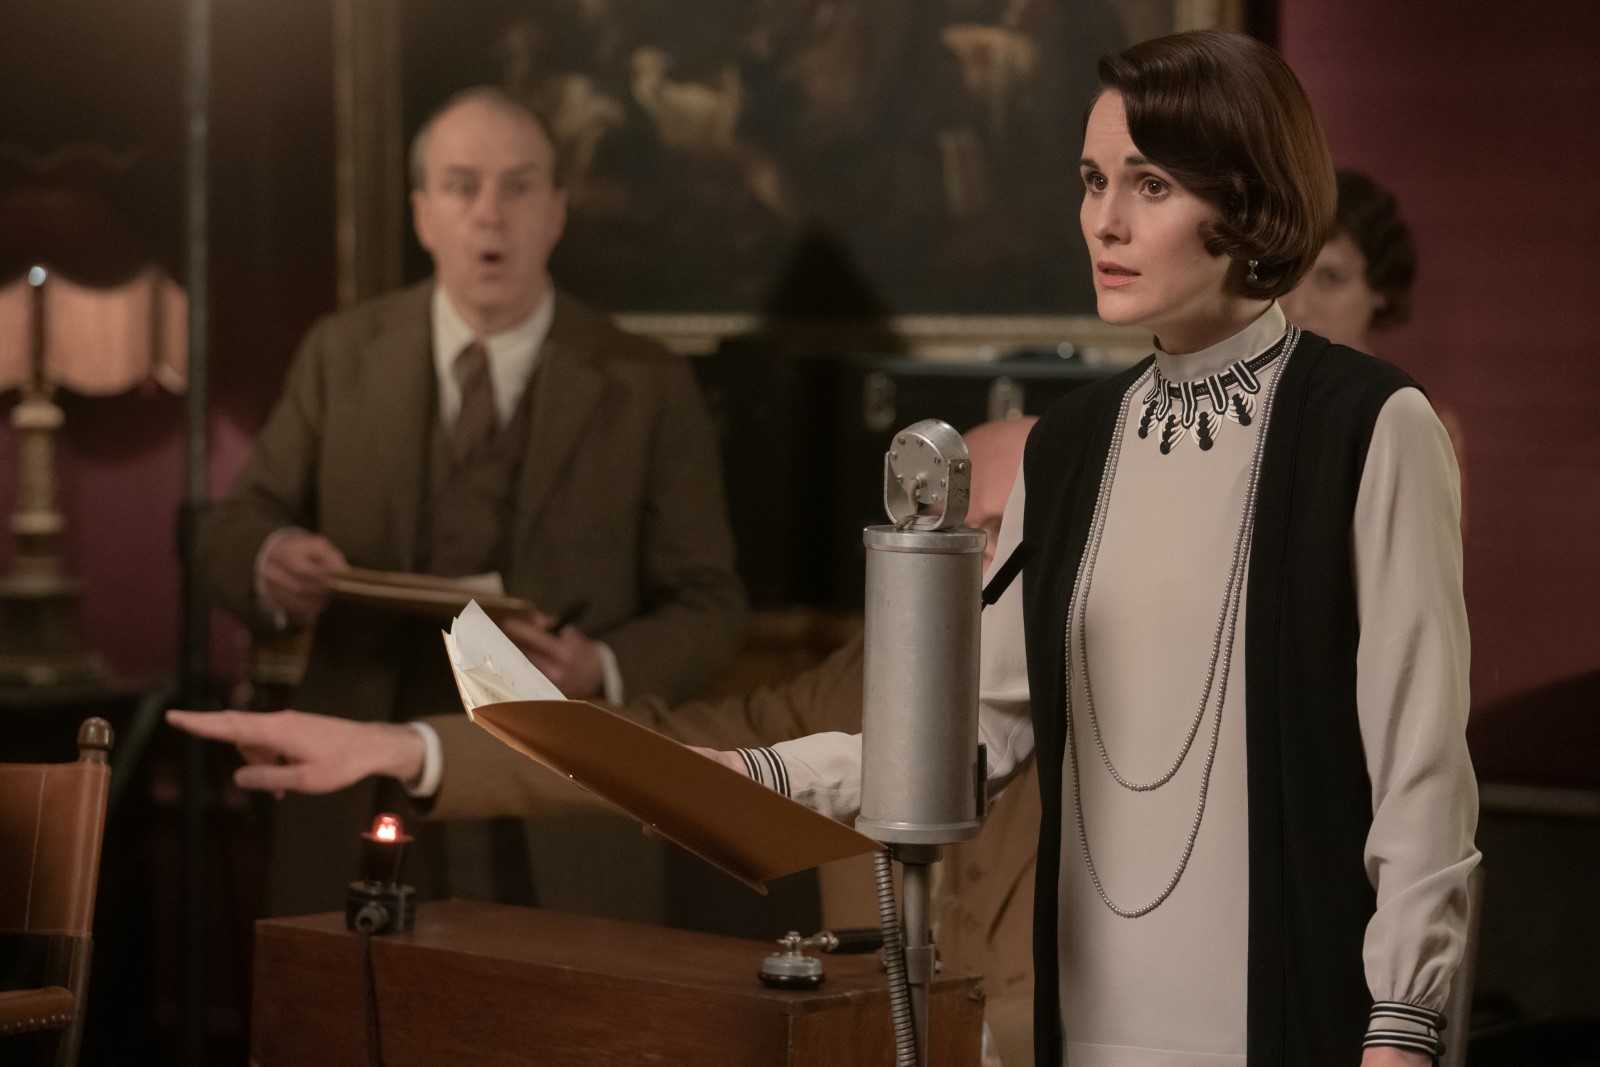 Szenenbild 4 vom Film Downton Abbey 2: Eine neue Ära 